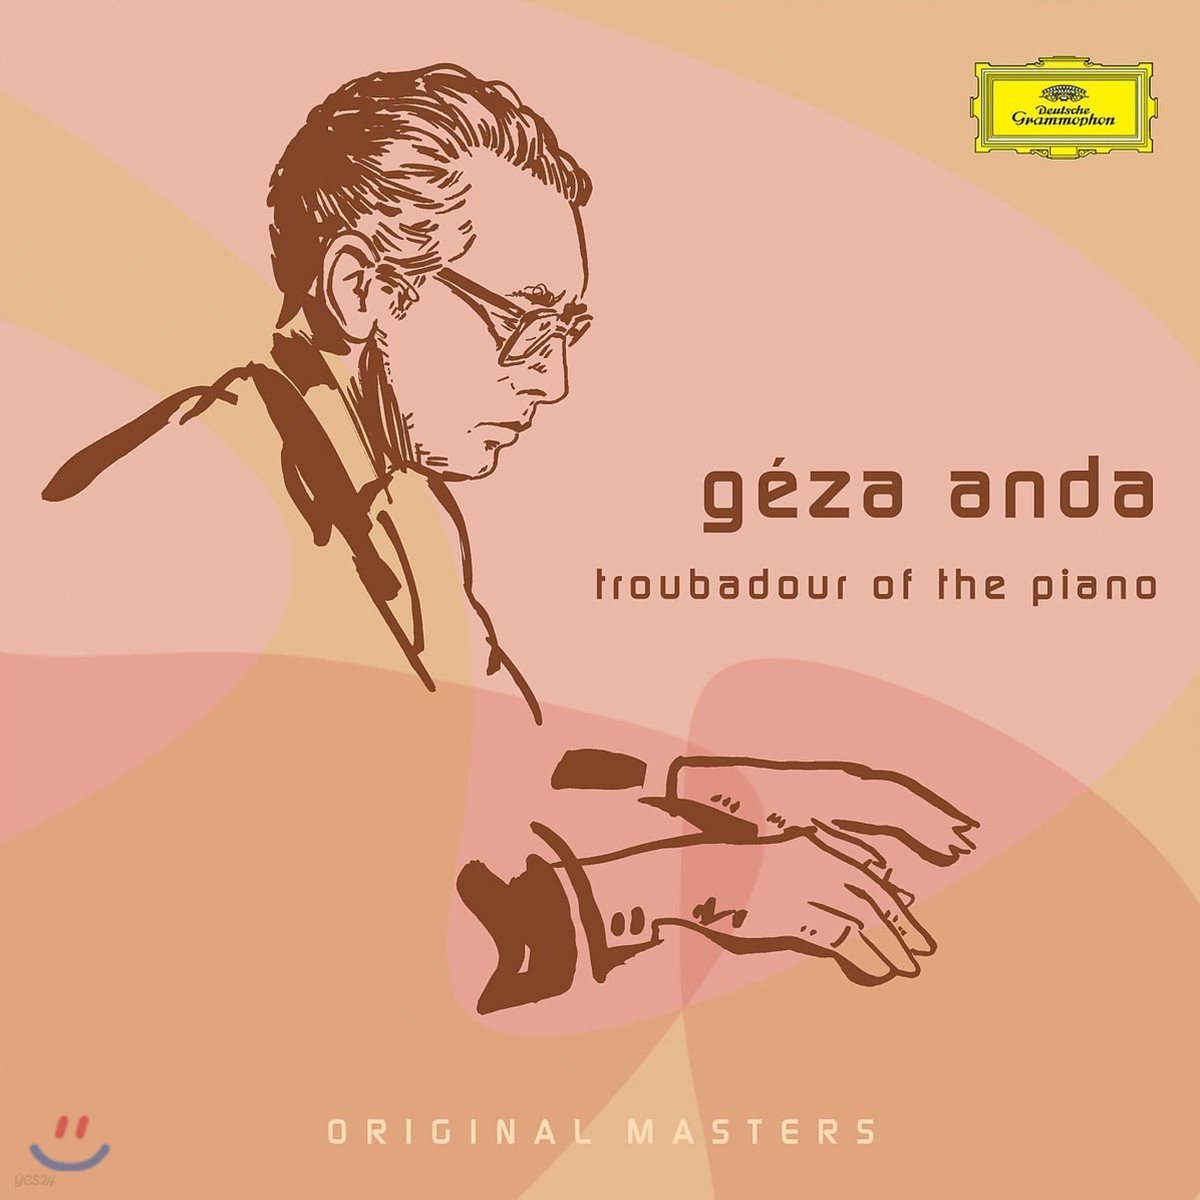 게자 안다 - 피아노의 음유 시인 (Geza Anda - Troubadour of the Piano)